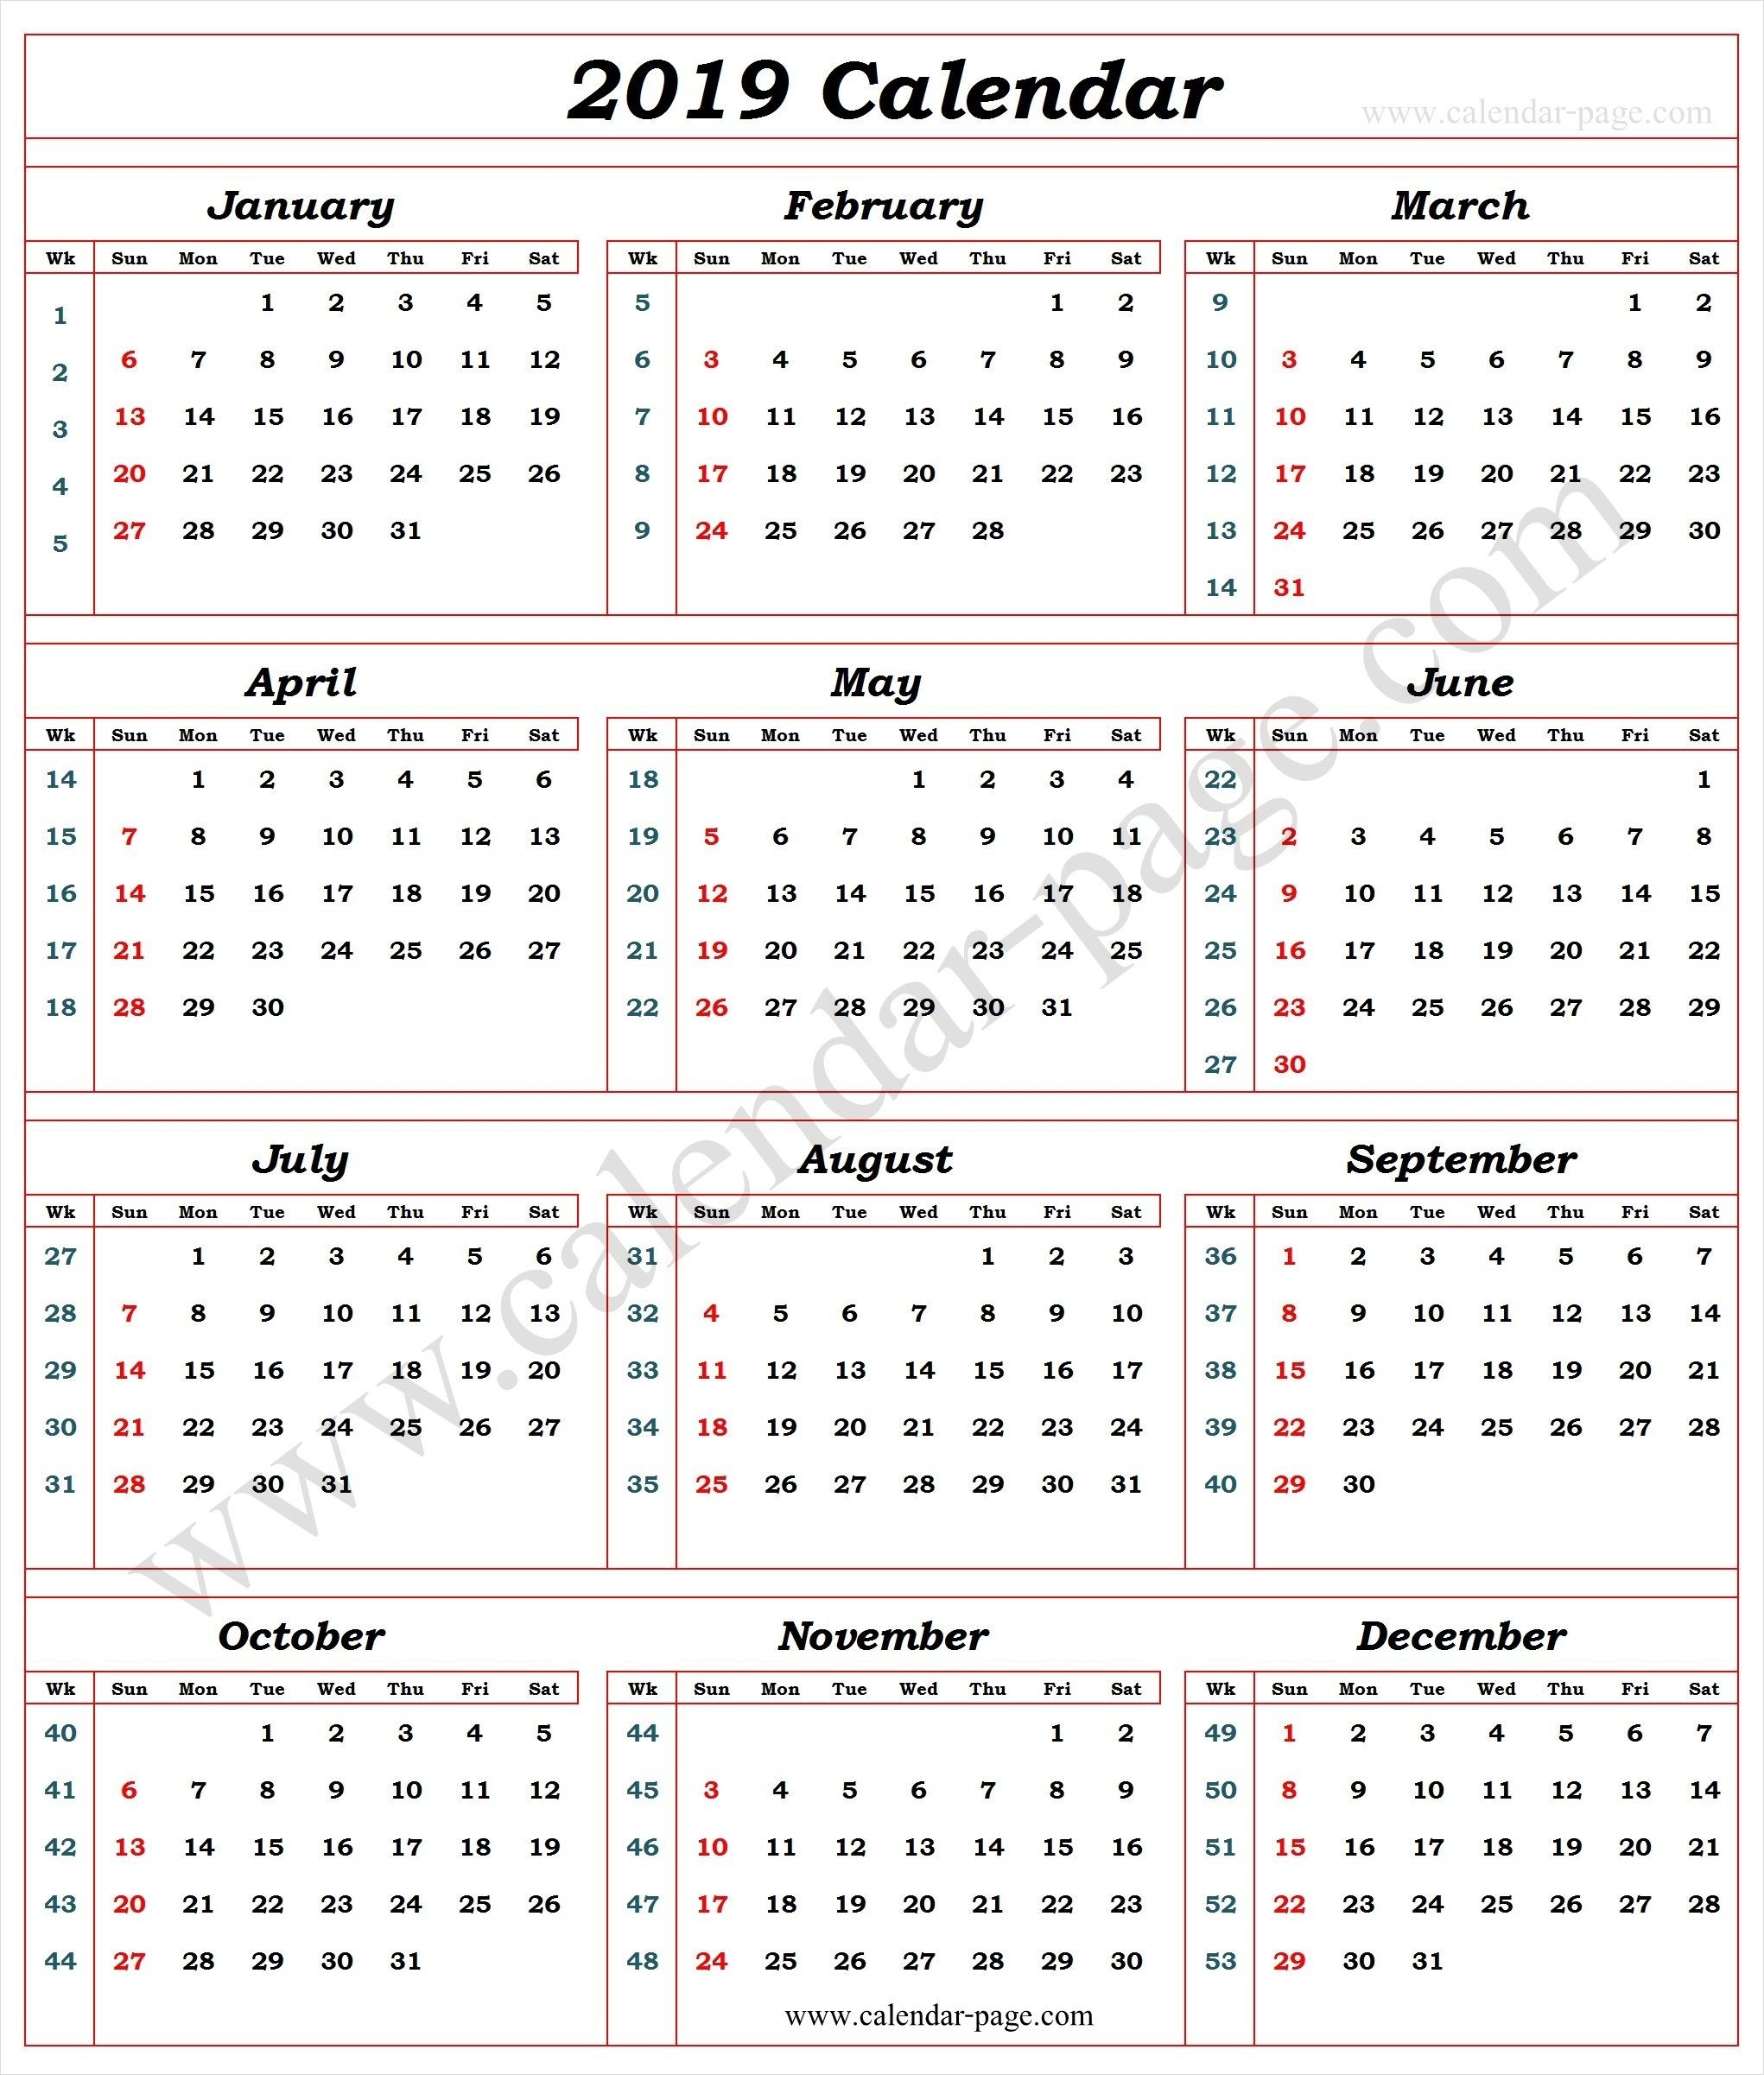 Calendar 2019 With Week Numbers | 2019 Calendar Template-Blank Calendar With Week Numbers